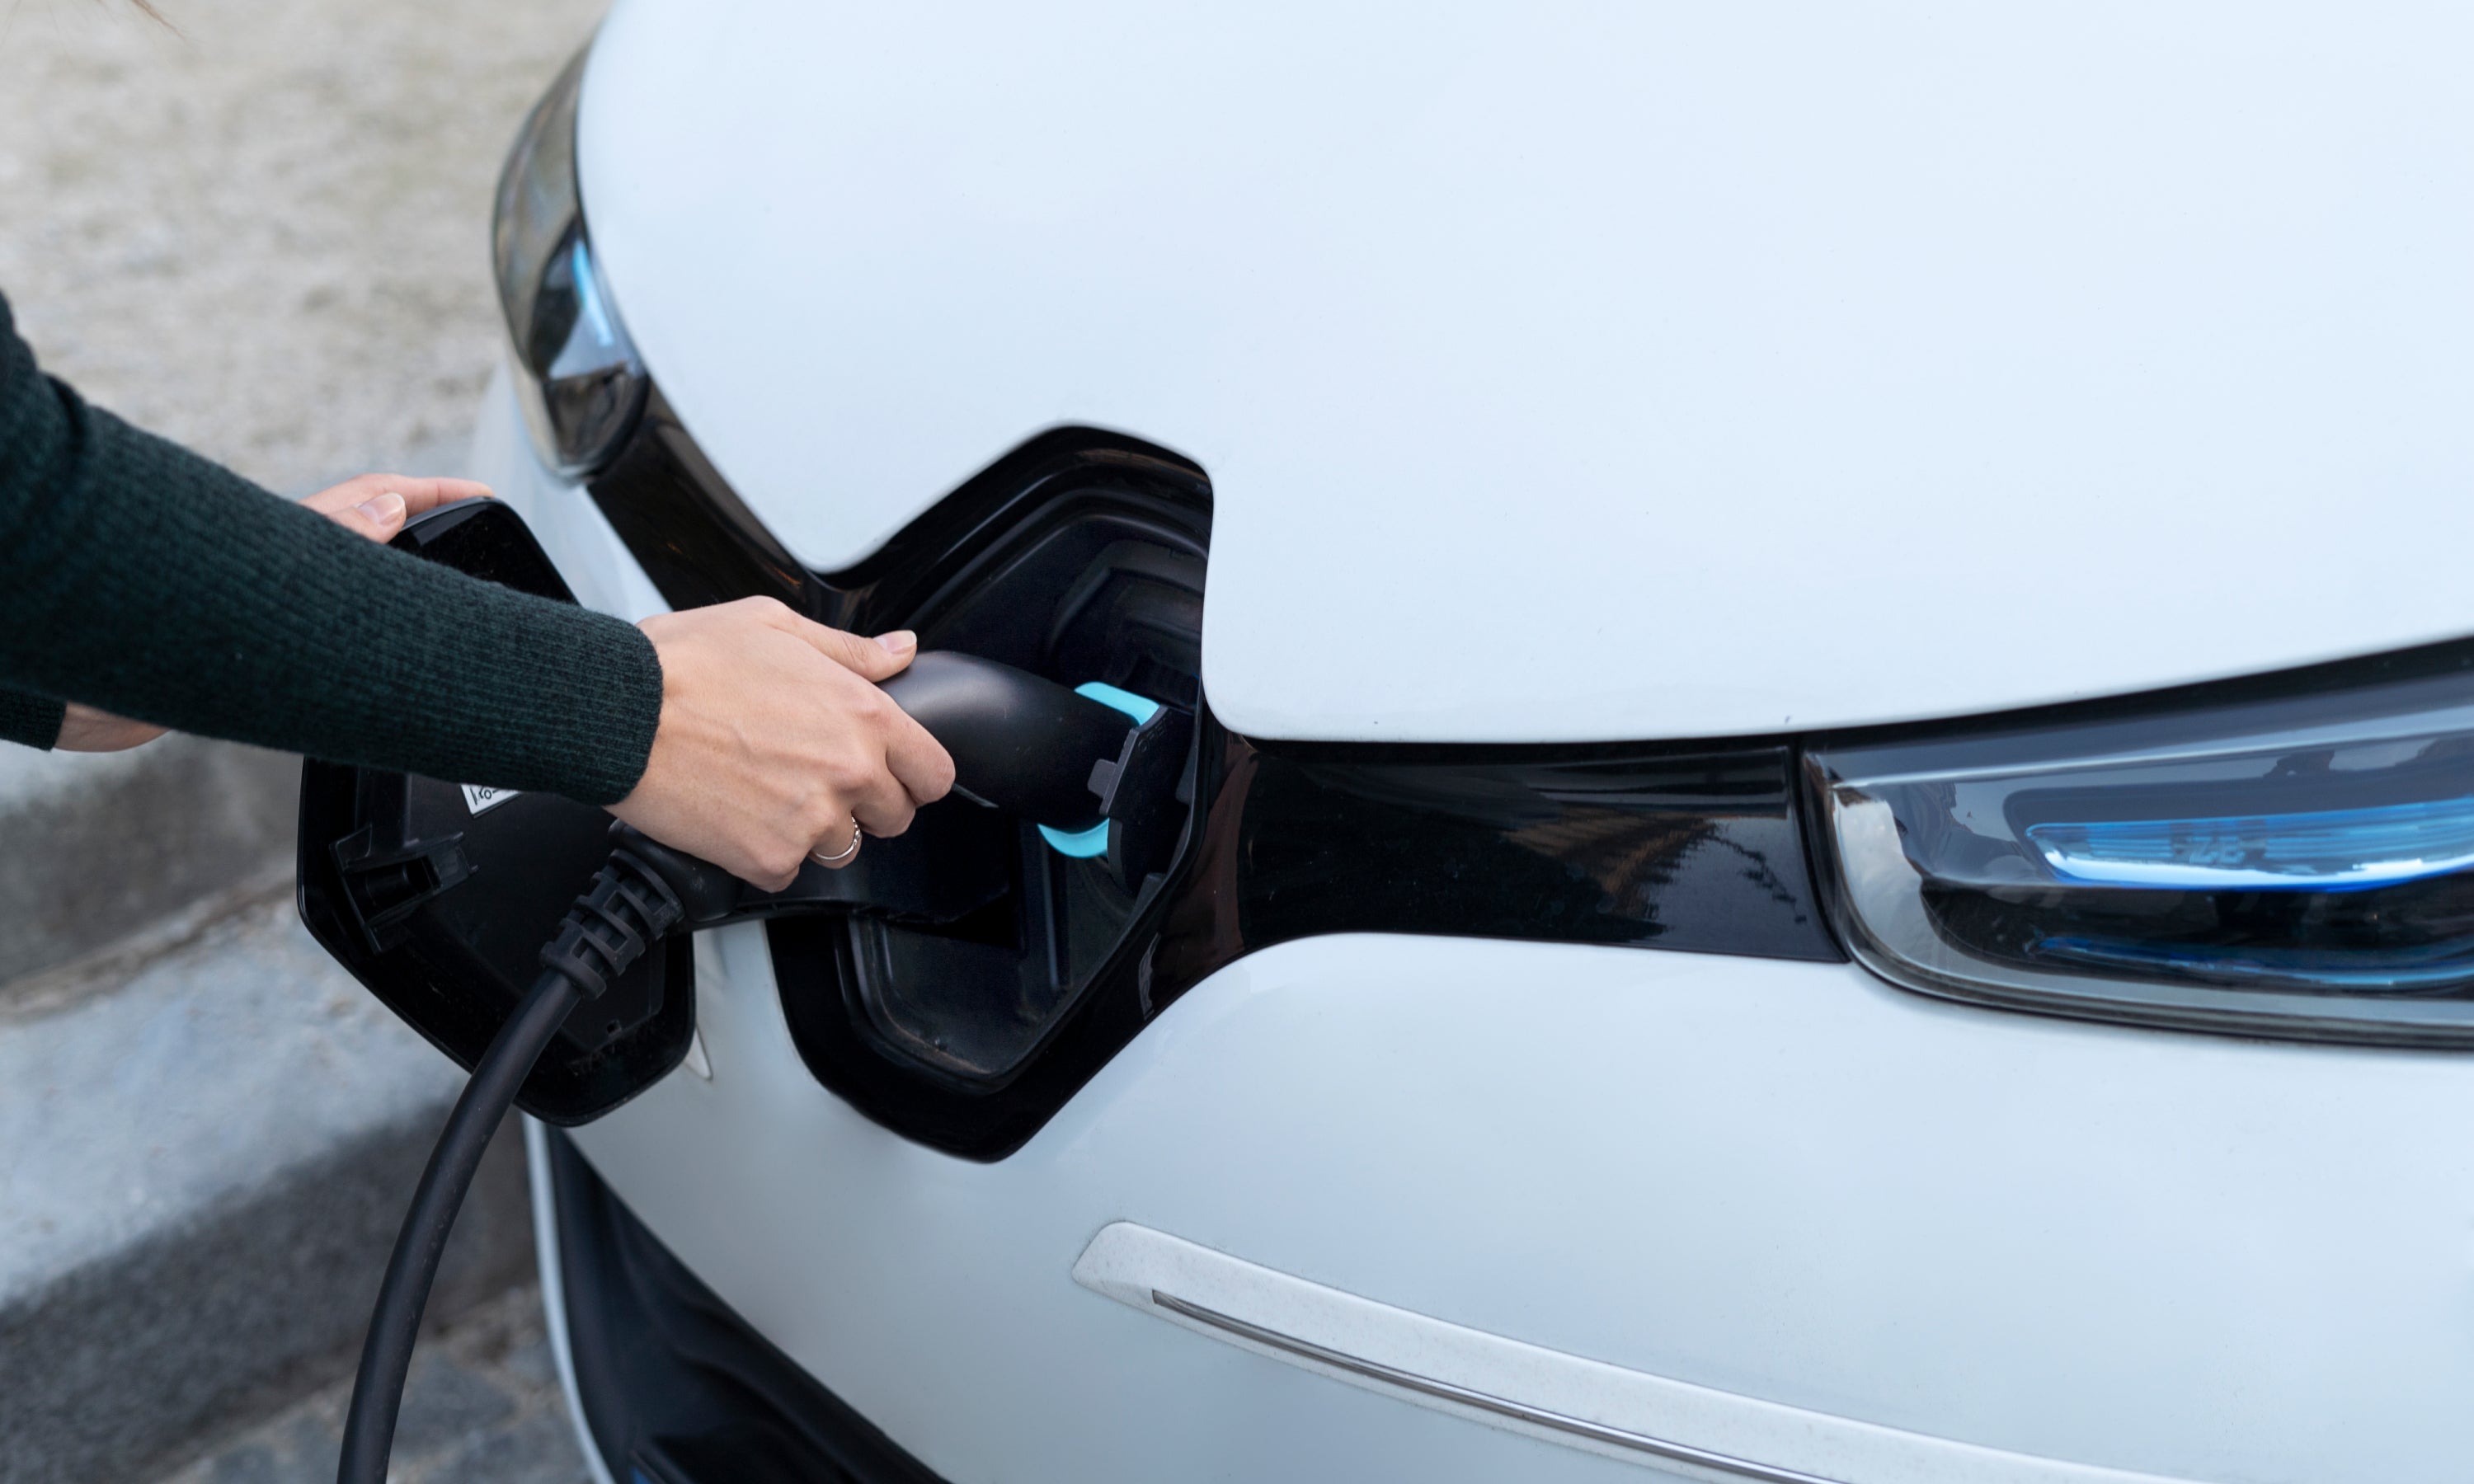 Stecken sie das elektroauto-ladegerät per hand in das elektroauto, um die  batterie aufzuladen, und überprüfen sie gleichzeitig die  batteriestatusanzeige auf dem smartphone. zukünftige nachhaltige und  saubere energie für elektroautos